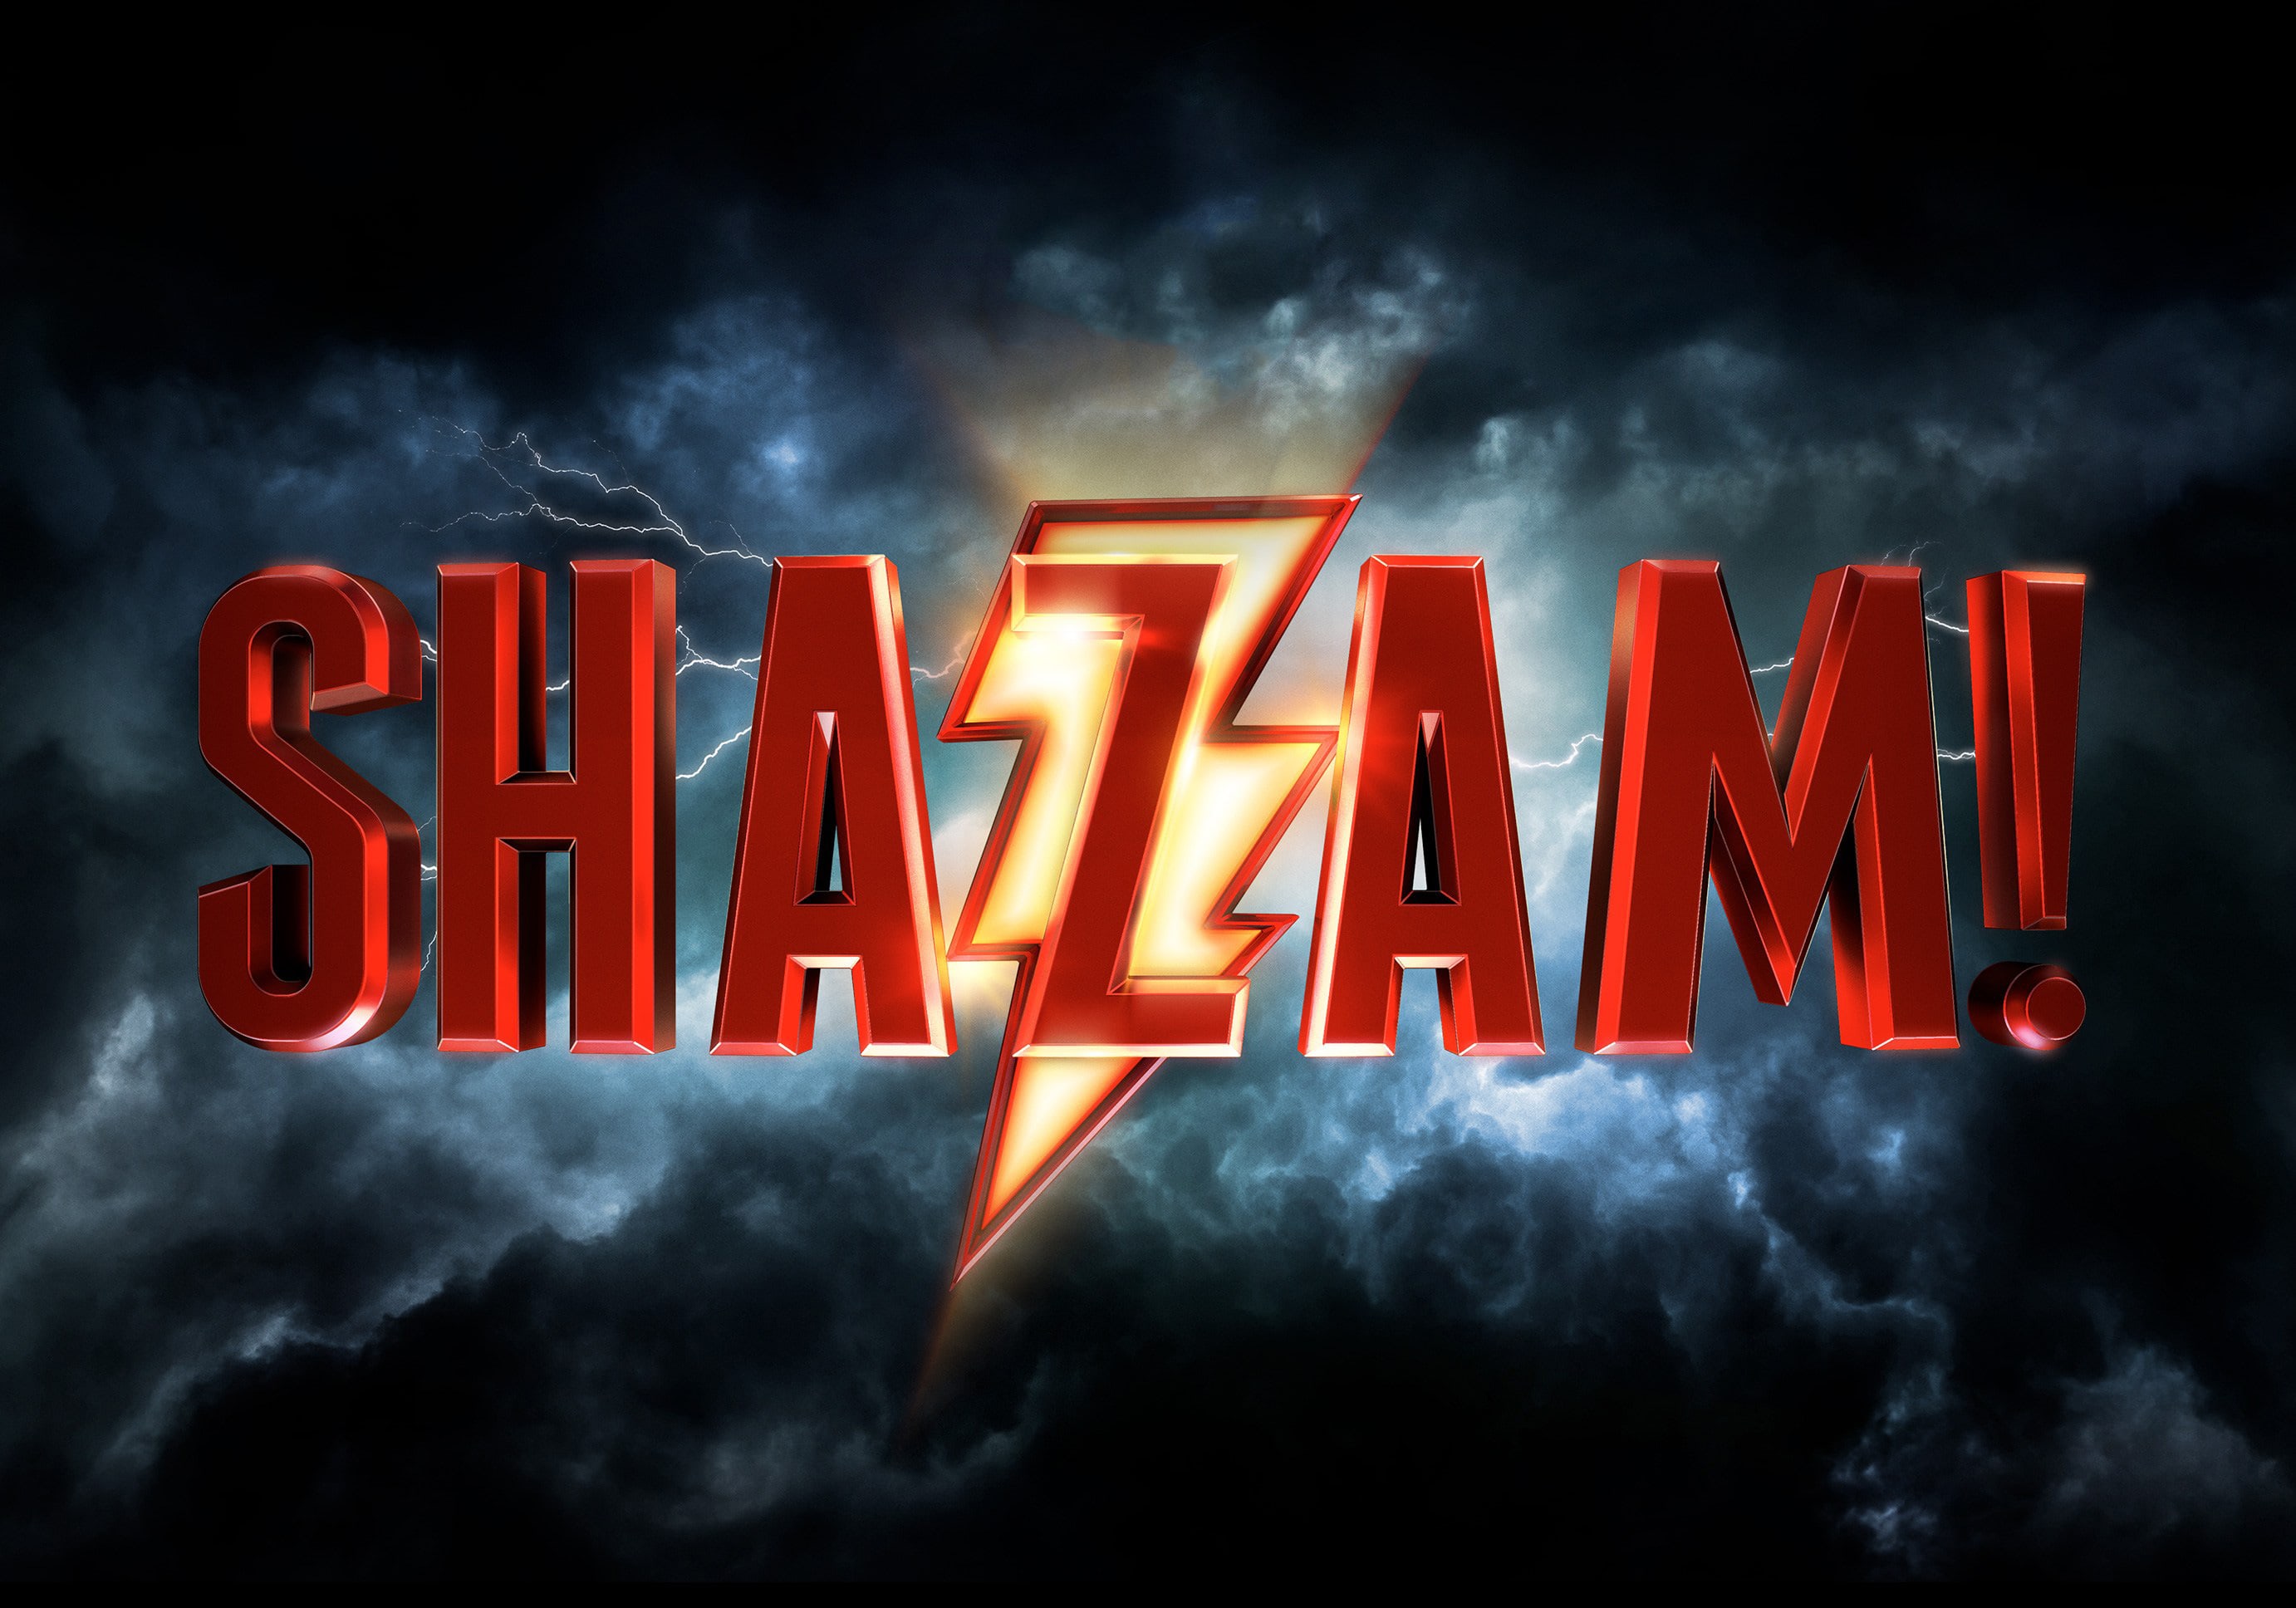 Shazam Movie Logo Wallpaper And Stock Photos